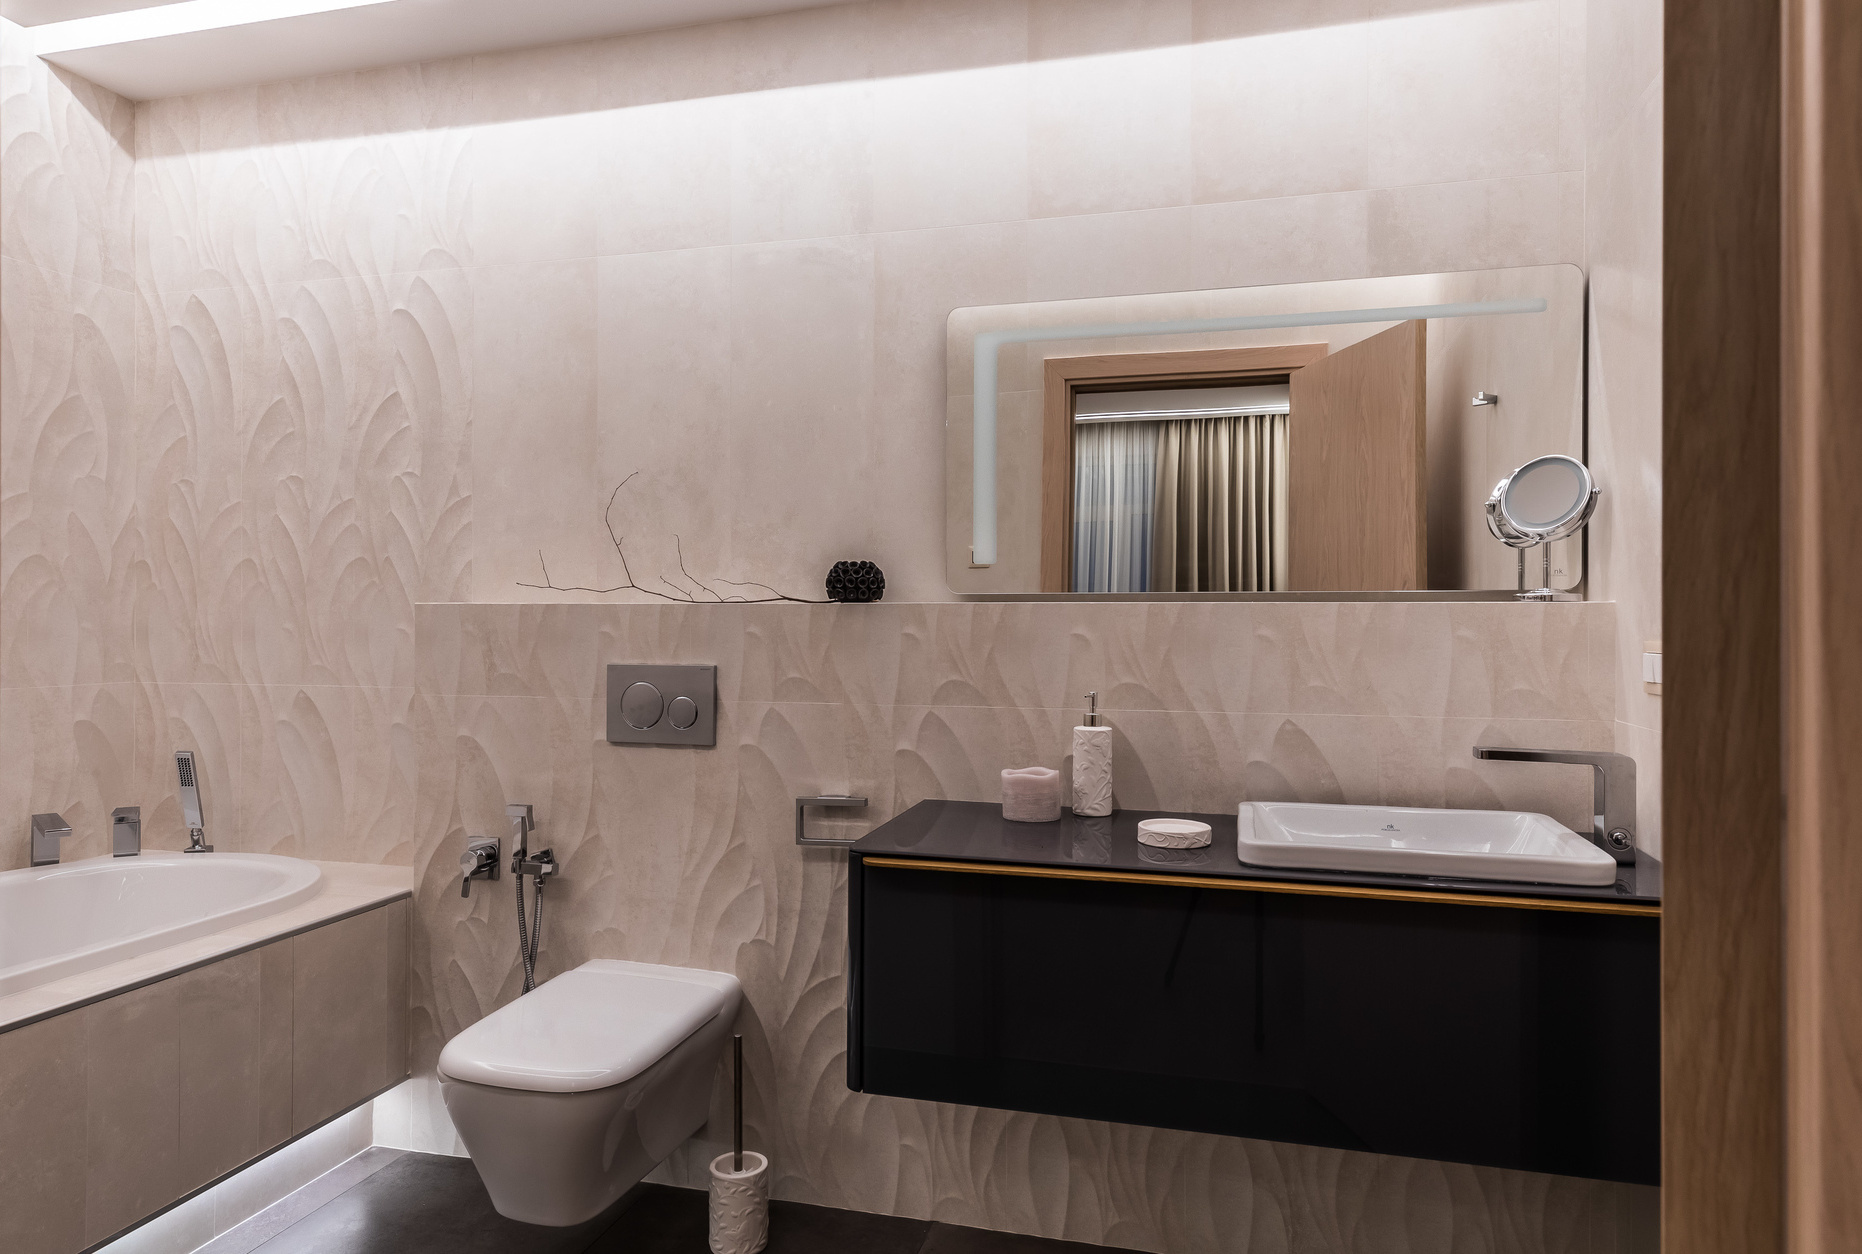 Để tạo vẻ đẹp sống động cho phòng tắm ít màu sắc, NTK nội thất đã chọn loại gạch ốp tường có đường vân nổi, trông cực kỳ 'nịnh mắt' trên phông nền hồng nhạt.